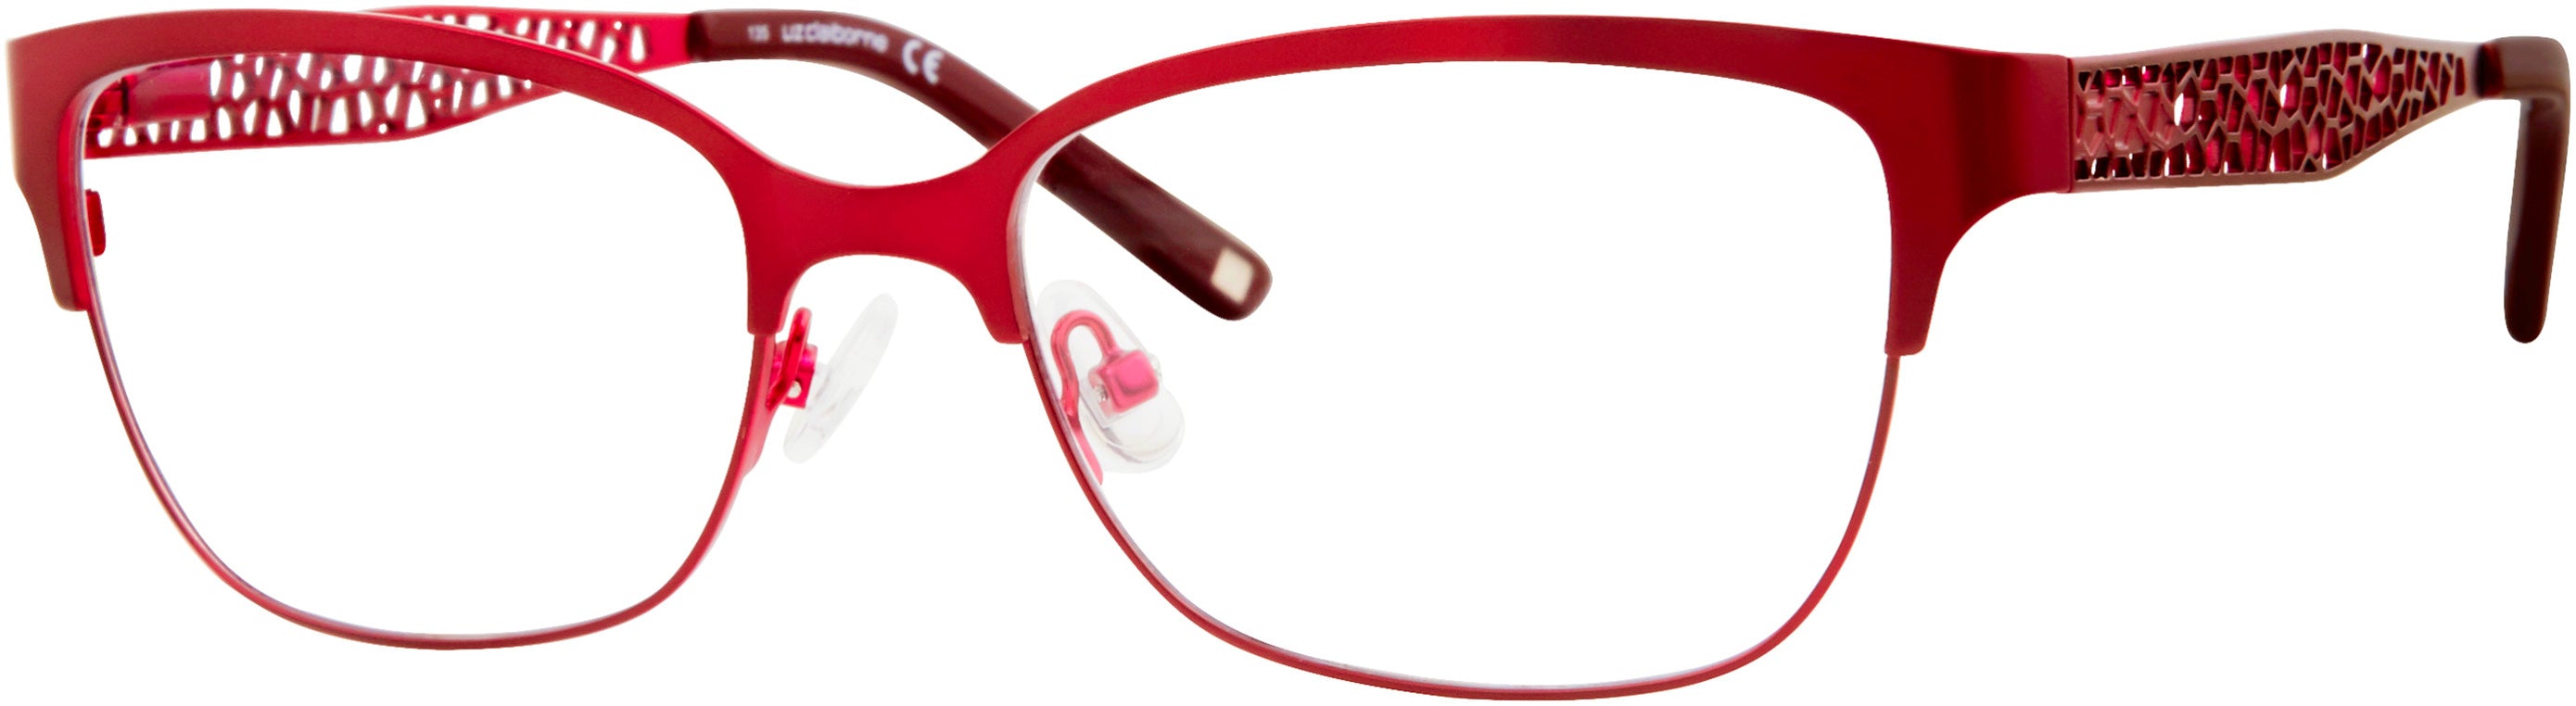  Liz Claiborne 643 Square Eyeglasses 0C8C-0C8C  Burgundy Red (00 Demo Lens)